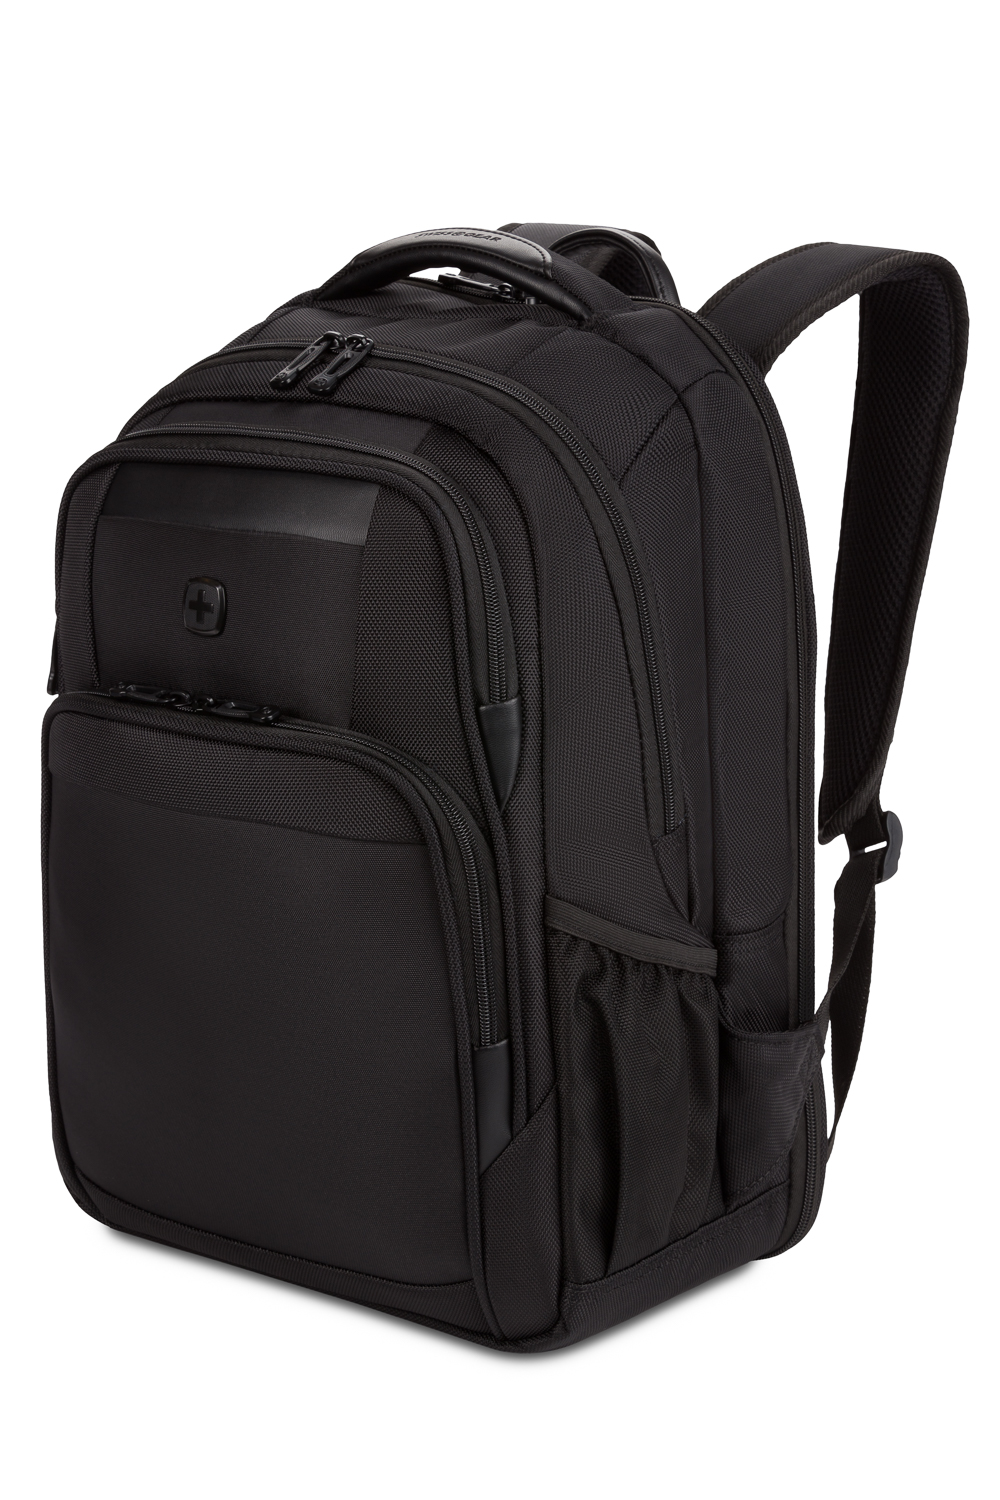 Swissgear 6392 Scansmart Laptop Backpack - Ballistic Black